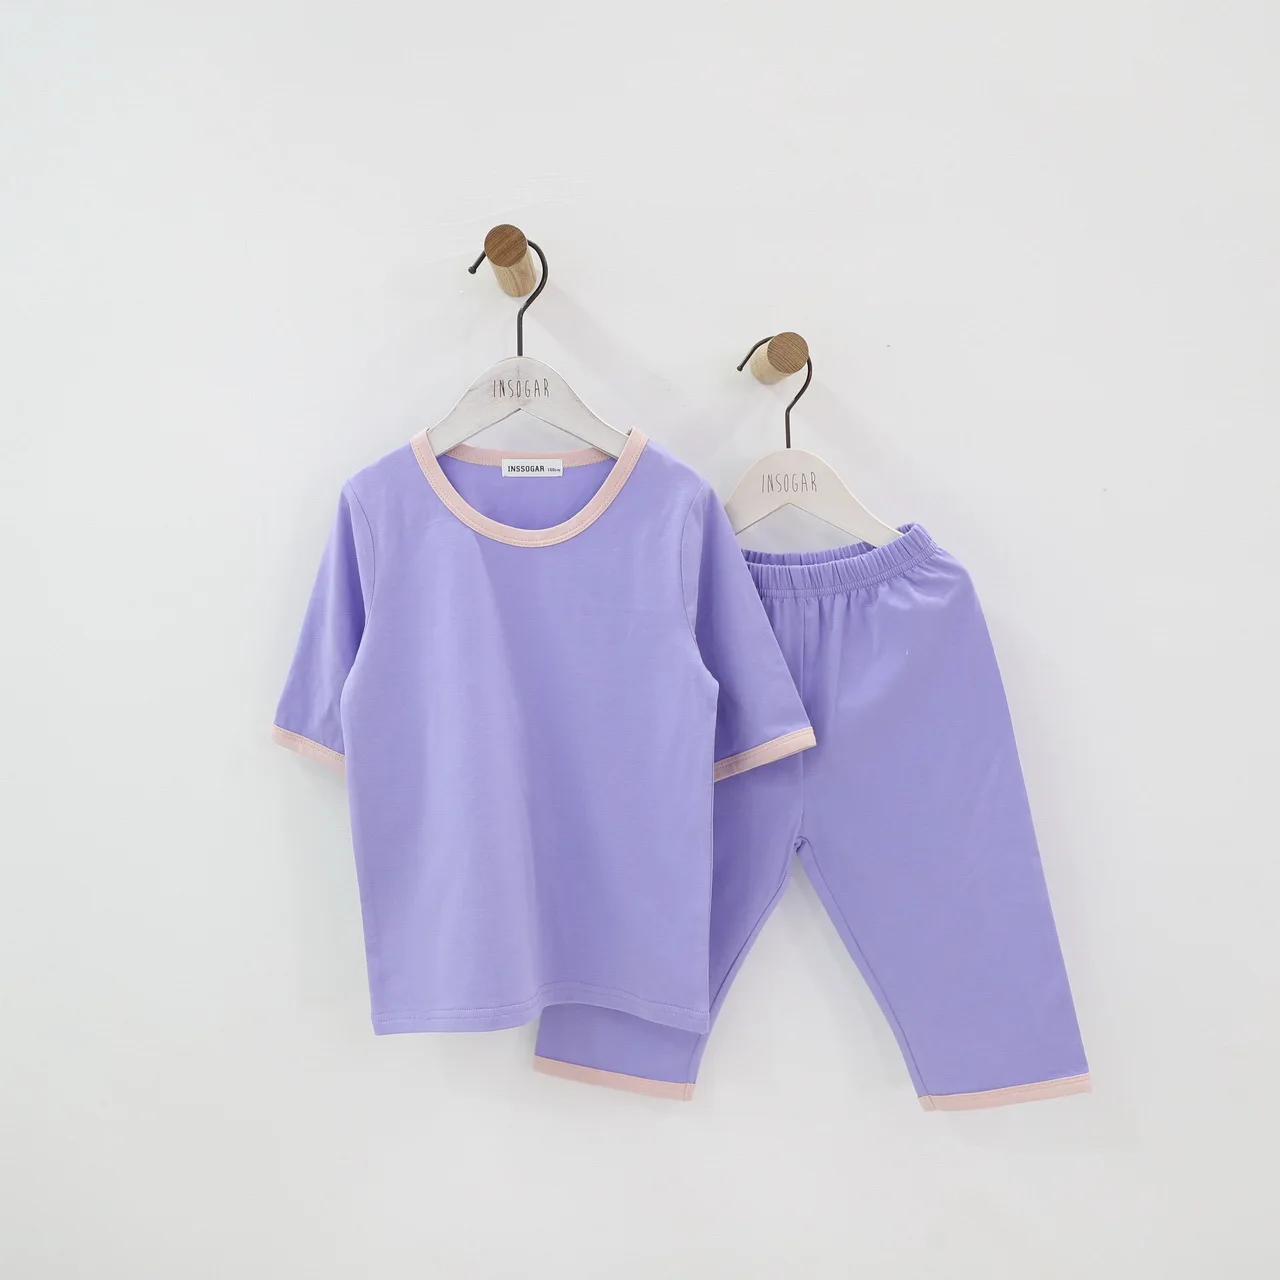 Дети мальчики девочки хлопковые пижамы комплект детская одежда 12 M 18 M 24 M 2 3 4 5 6 7 8 От 9 до 15 лет летние тонкие одежда для малышей - Цвет: Фиолетовый